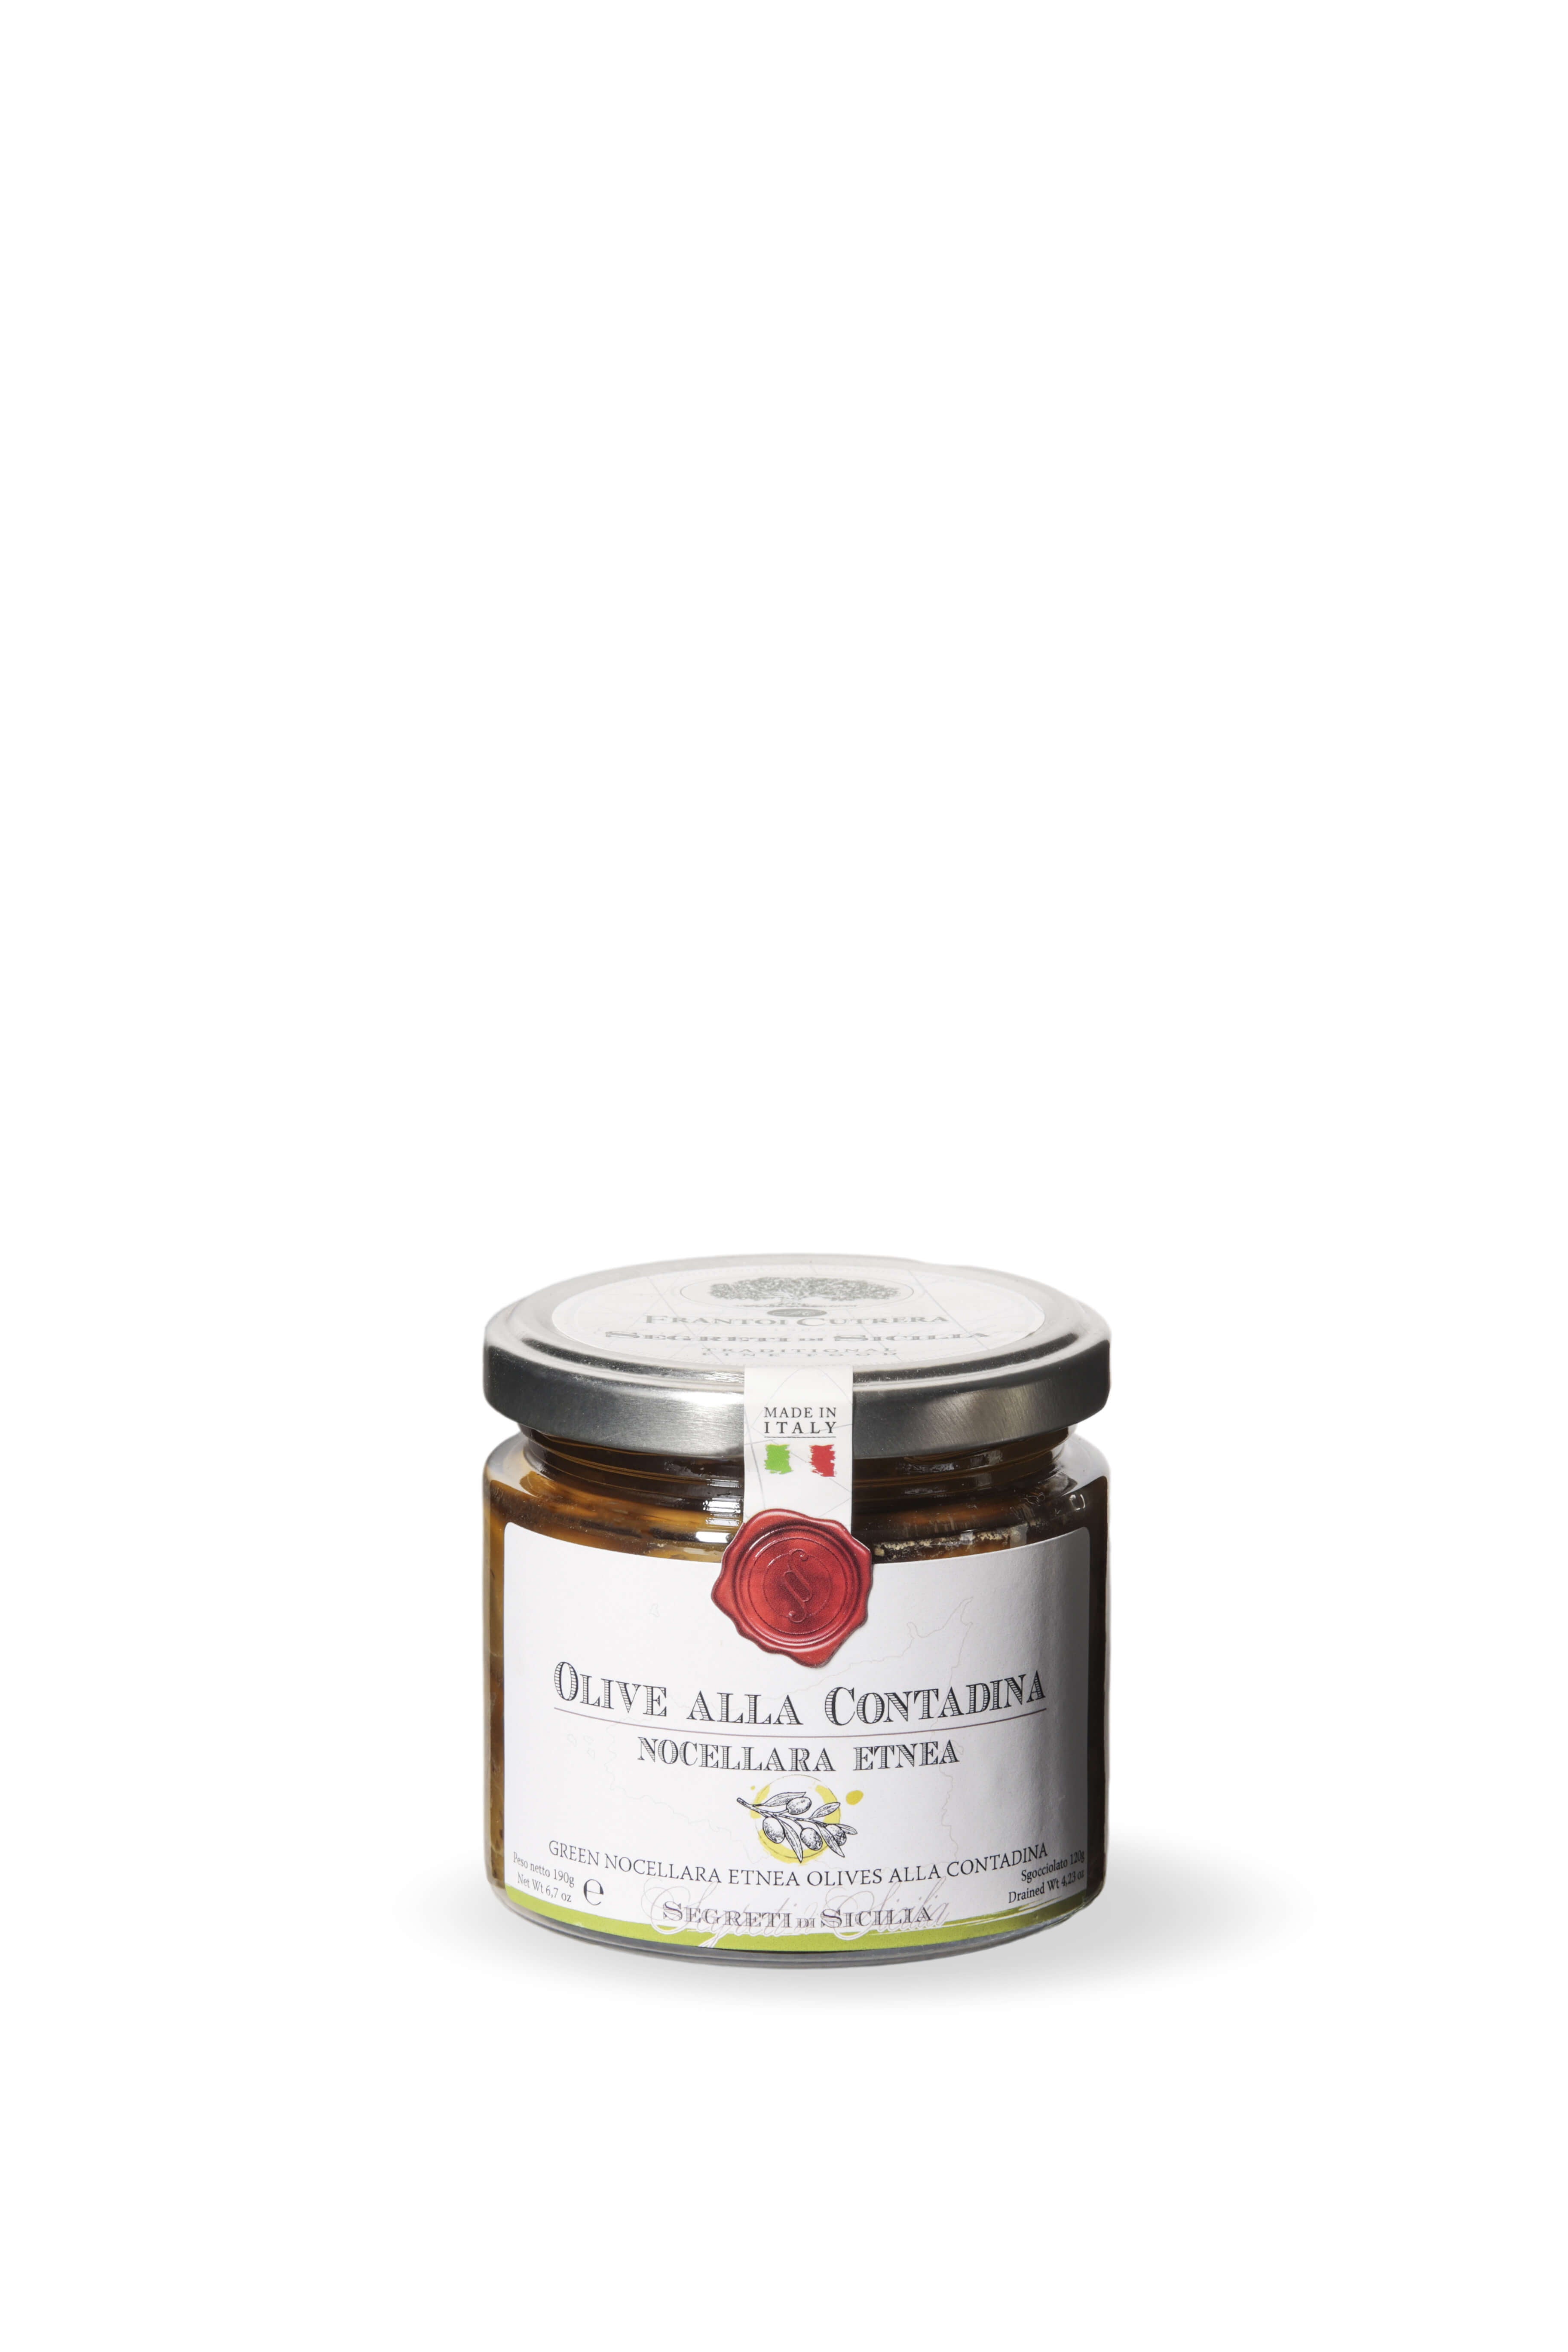 Olive alla contadina – Segreti di Sicilia